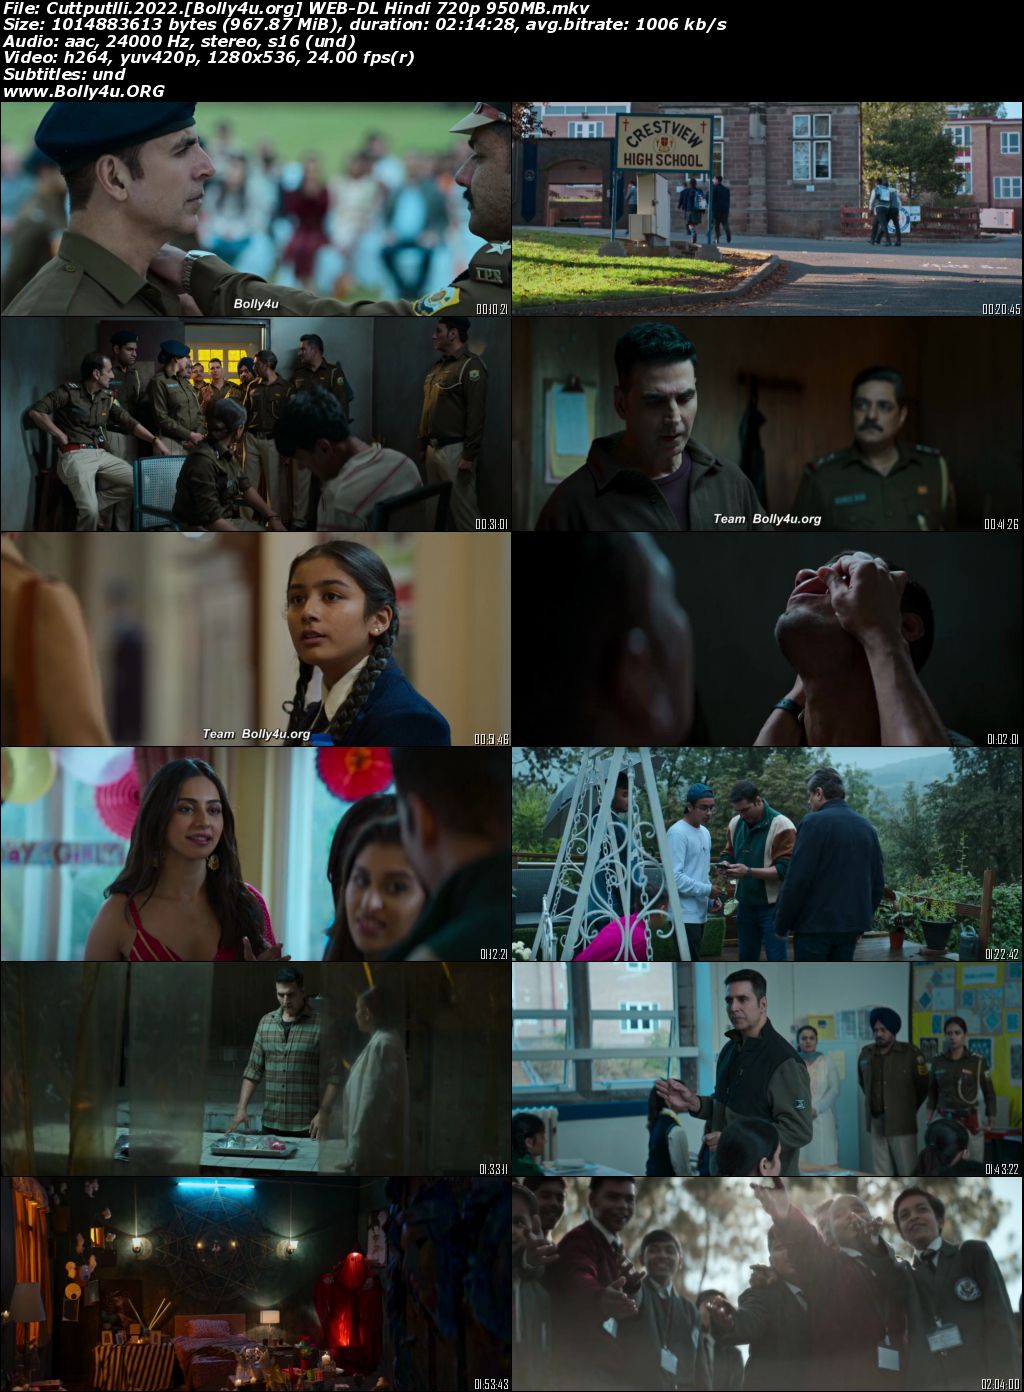 Cuttputlli 2022 WEB-DL Hindi Full Movie Download 1080p 720p 480p